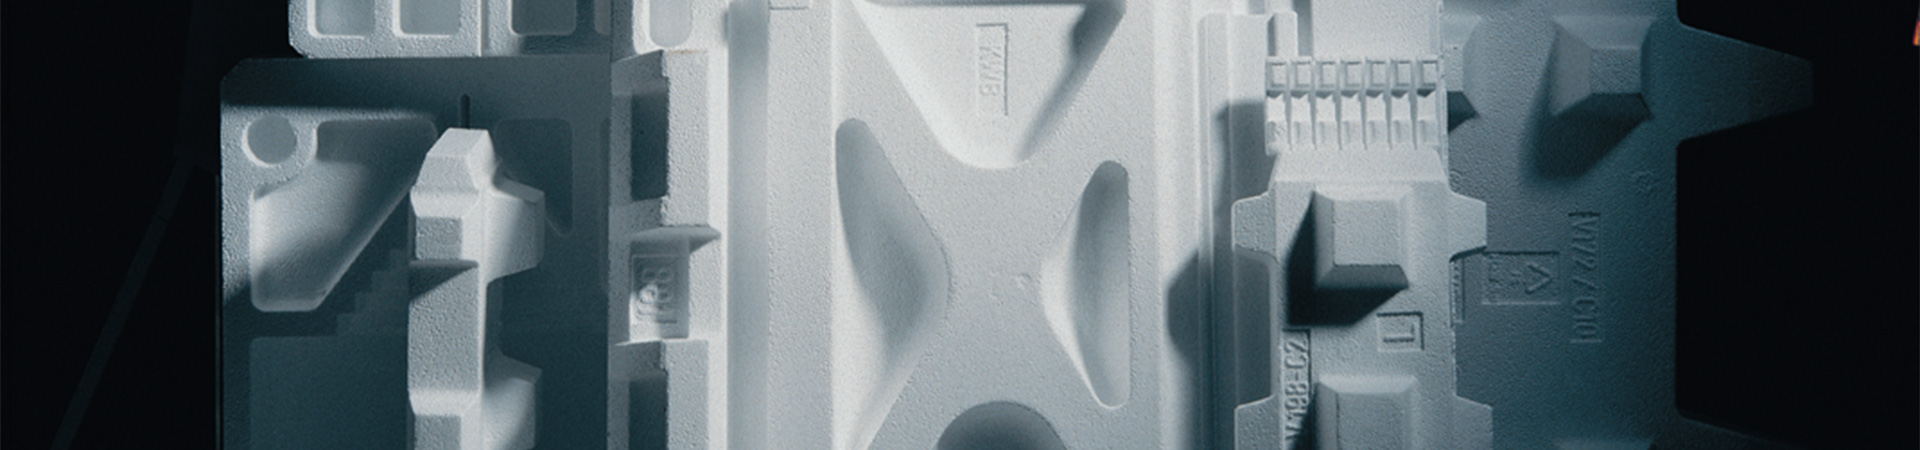 Eine Nahaufnahme von weißen Styropor verpackungsmöglichkeiten während der Produktion in einer Fabrik.